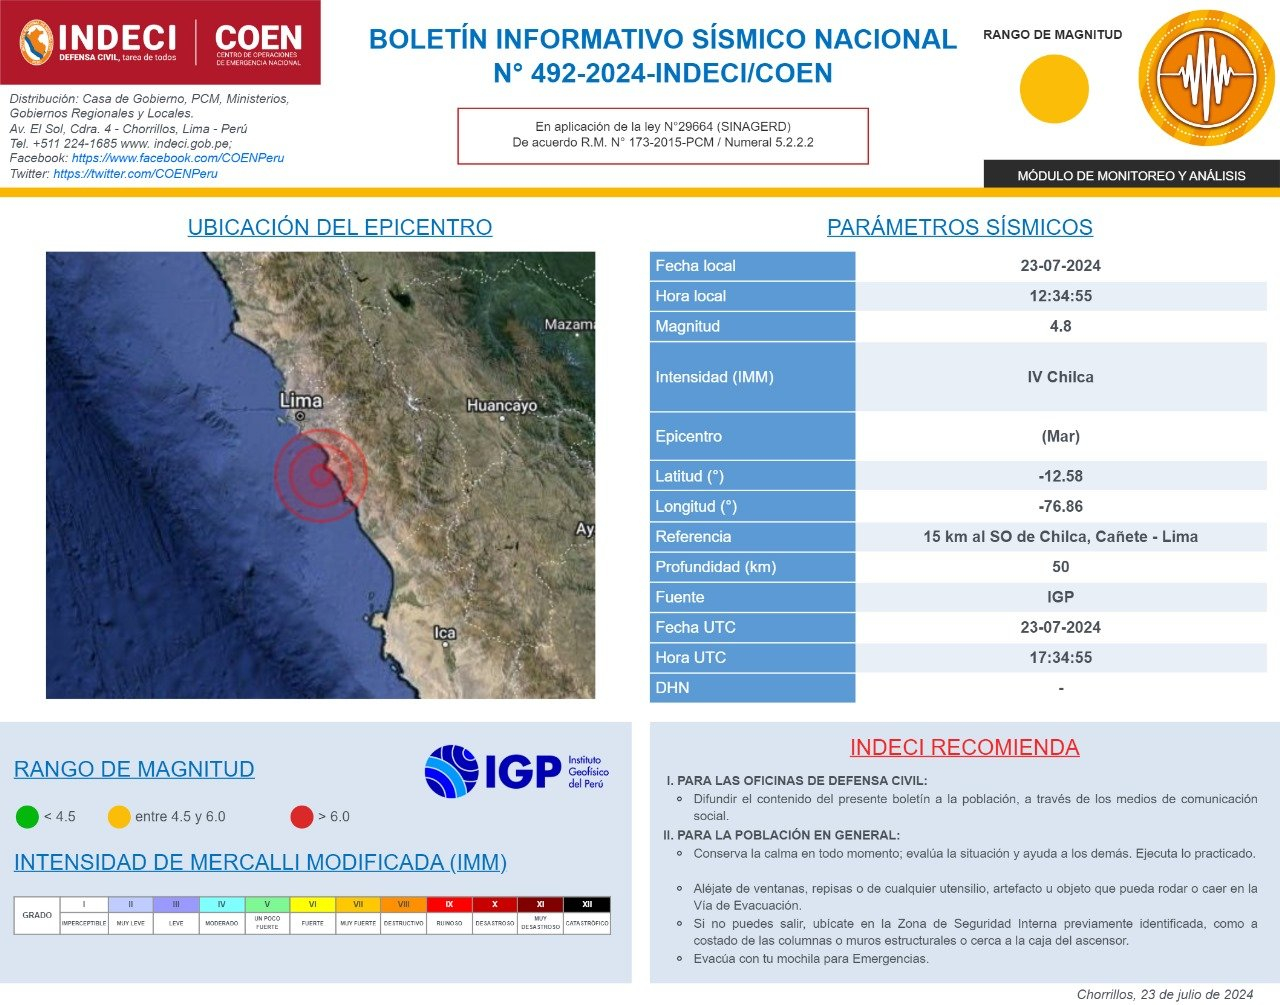 Temblor de magnitud 4.8 remeció Lima hoy, según IGP